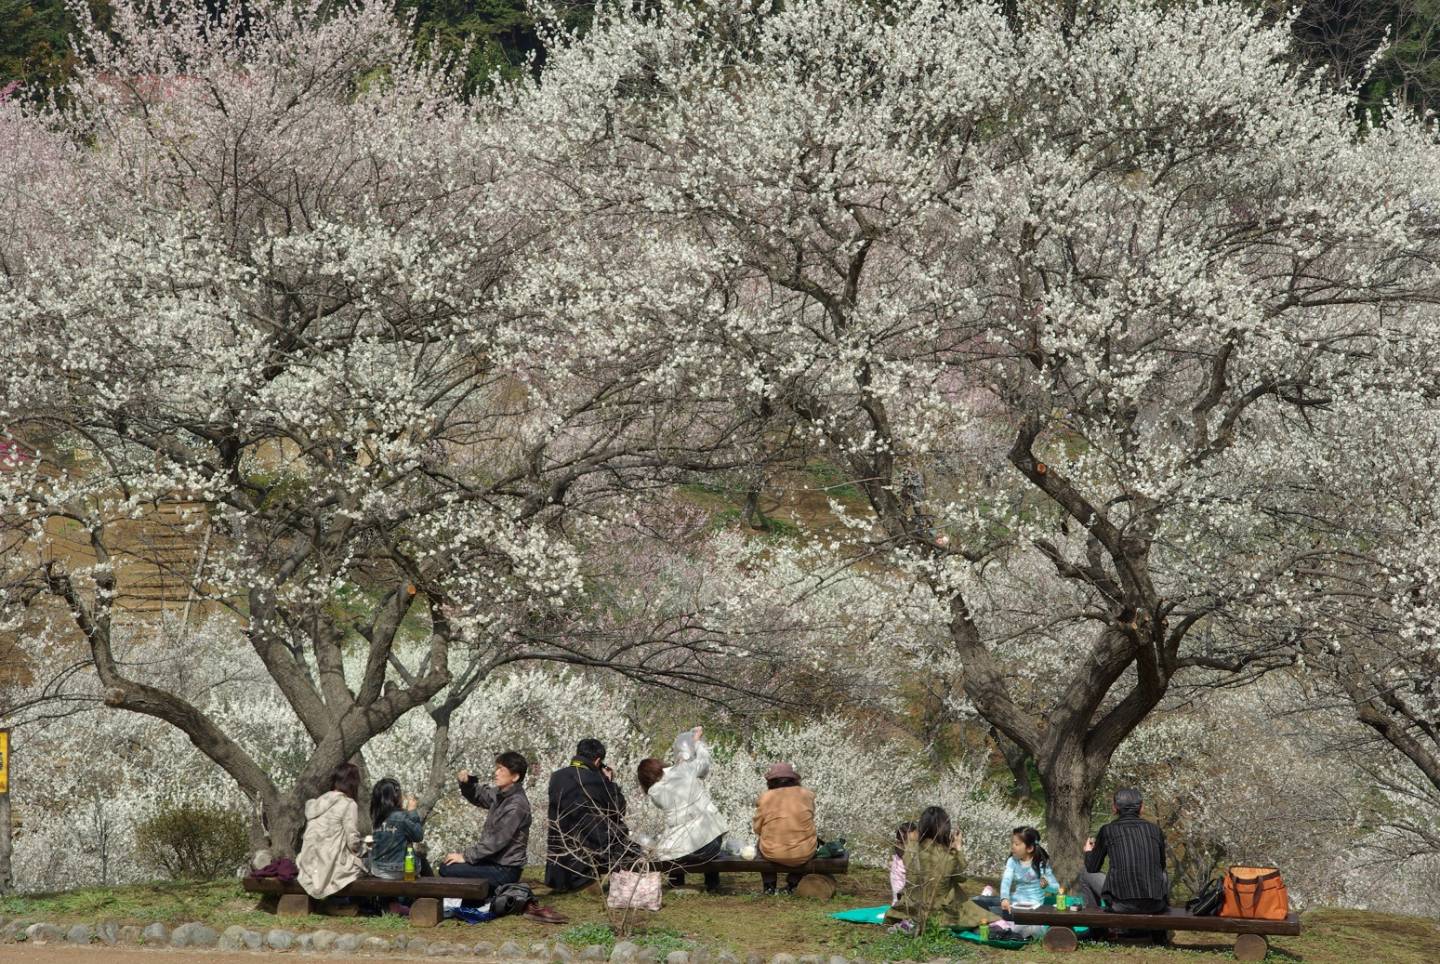 Pflaumenblütenschau in Japan